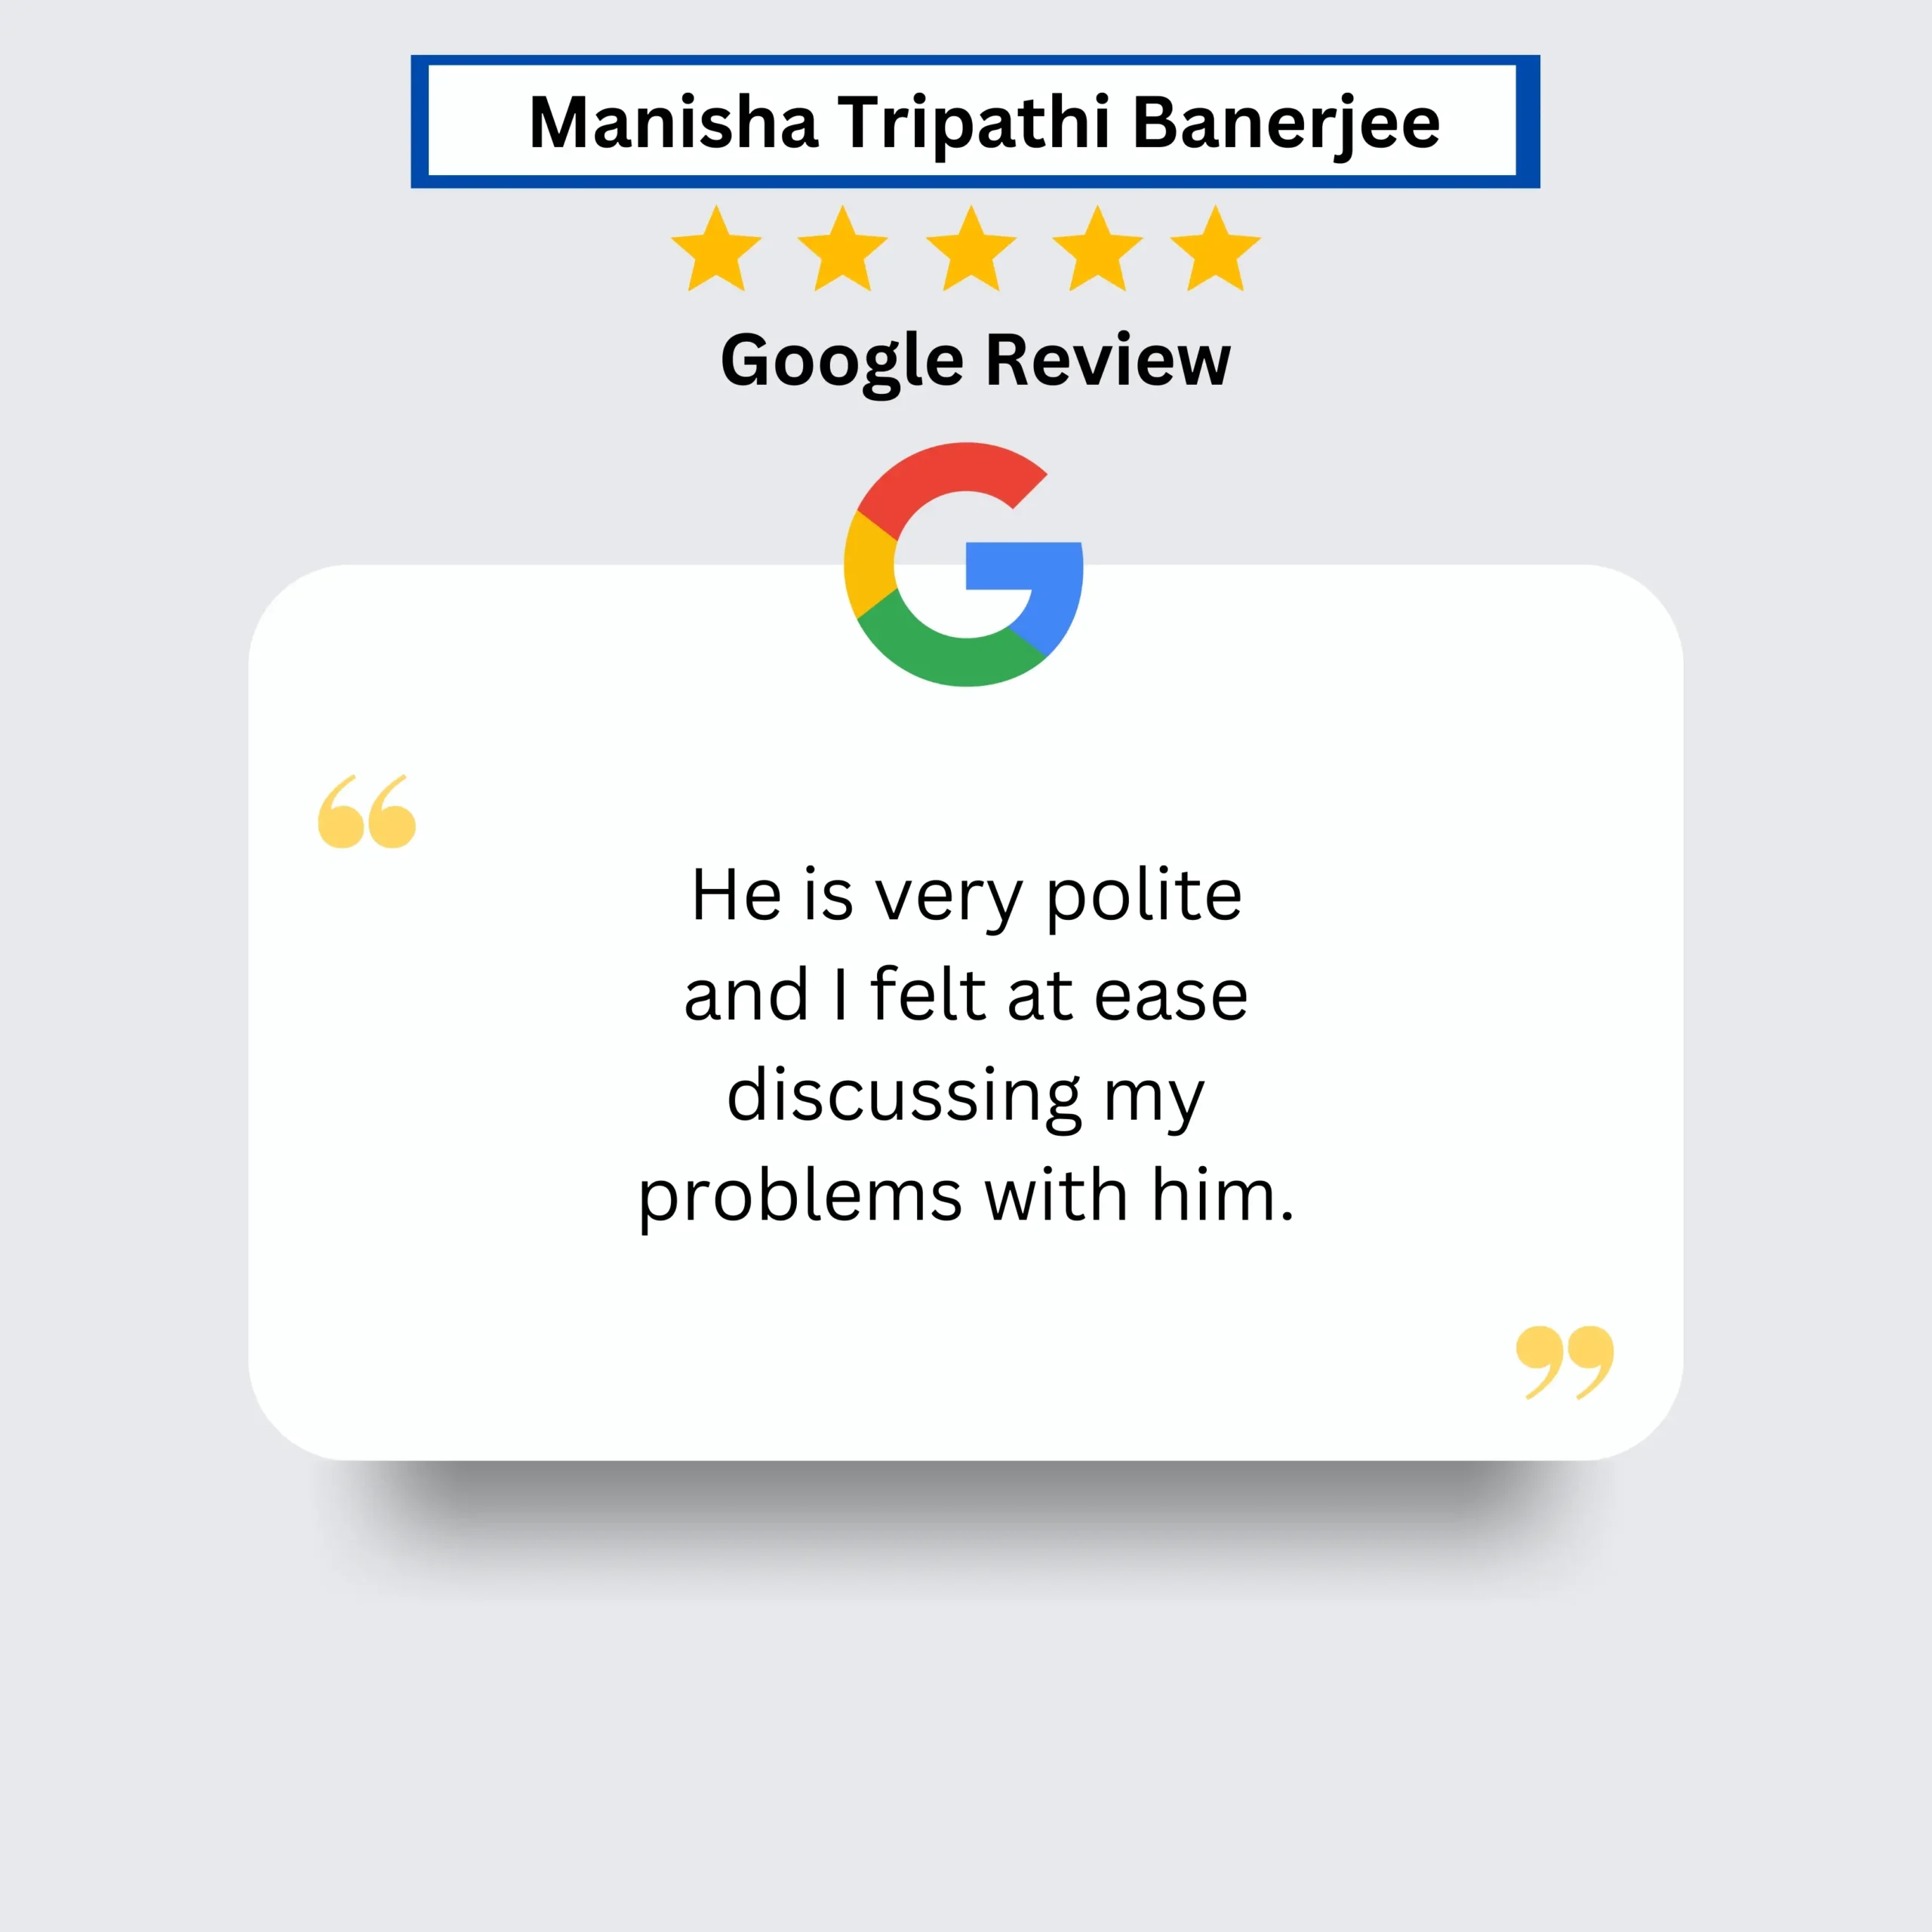 Manisha Tripathi Banerjee